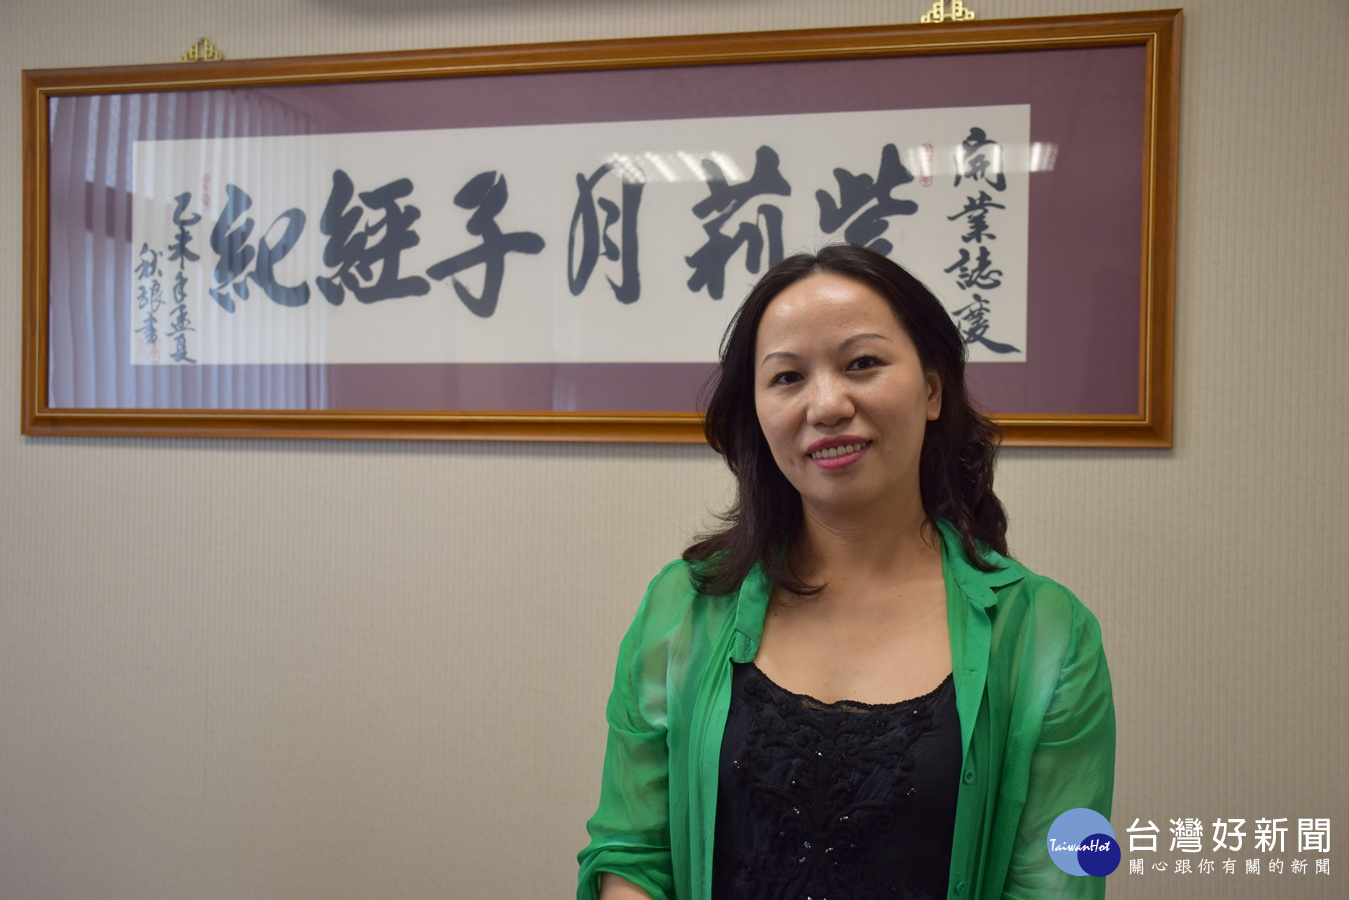 江西媳婦黃騏曼在台深耕月子產業十餘年，從百萬年薪業務員轉而創辦全國首家月子經紀公司。